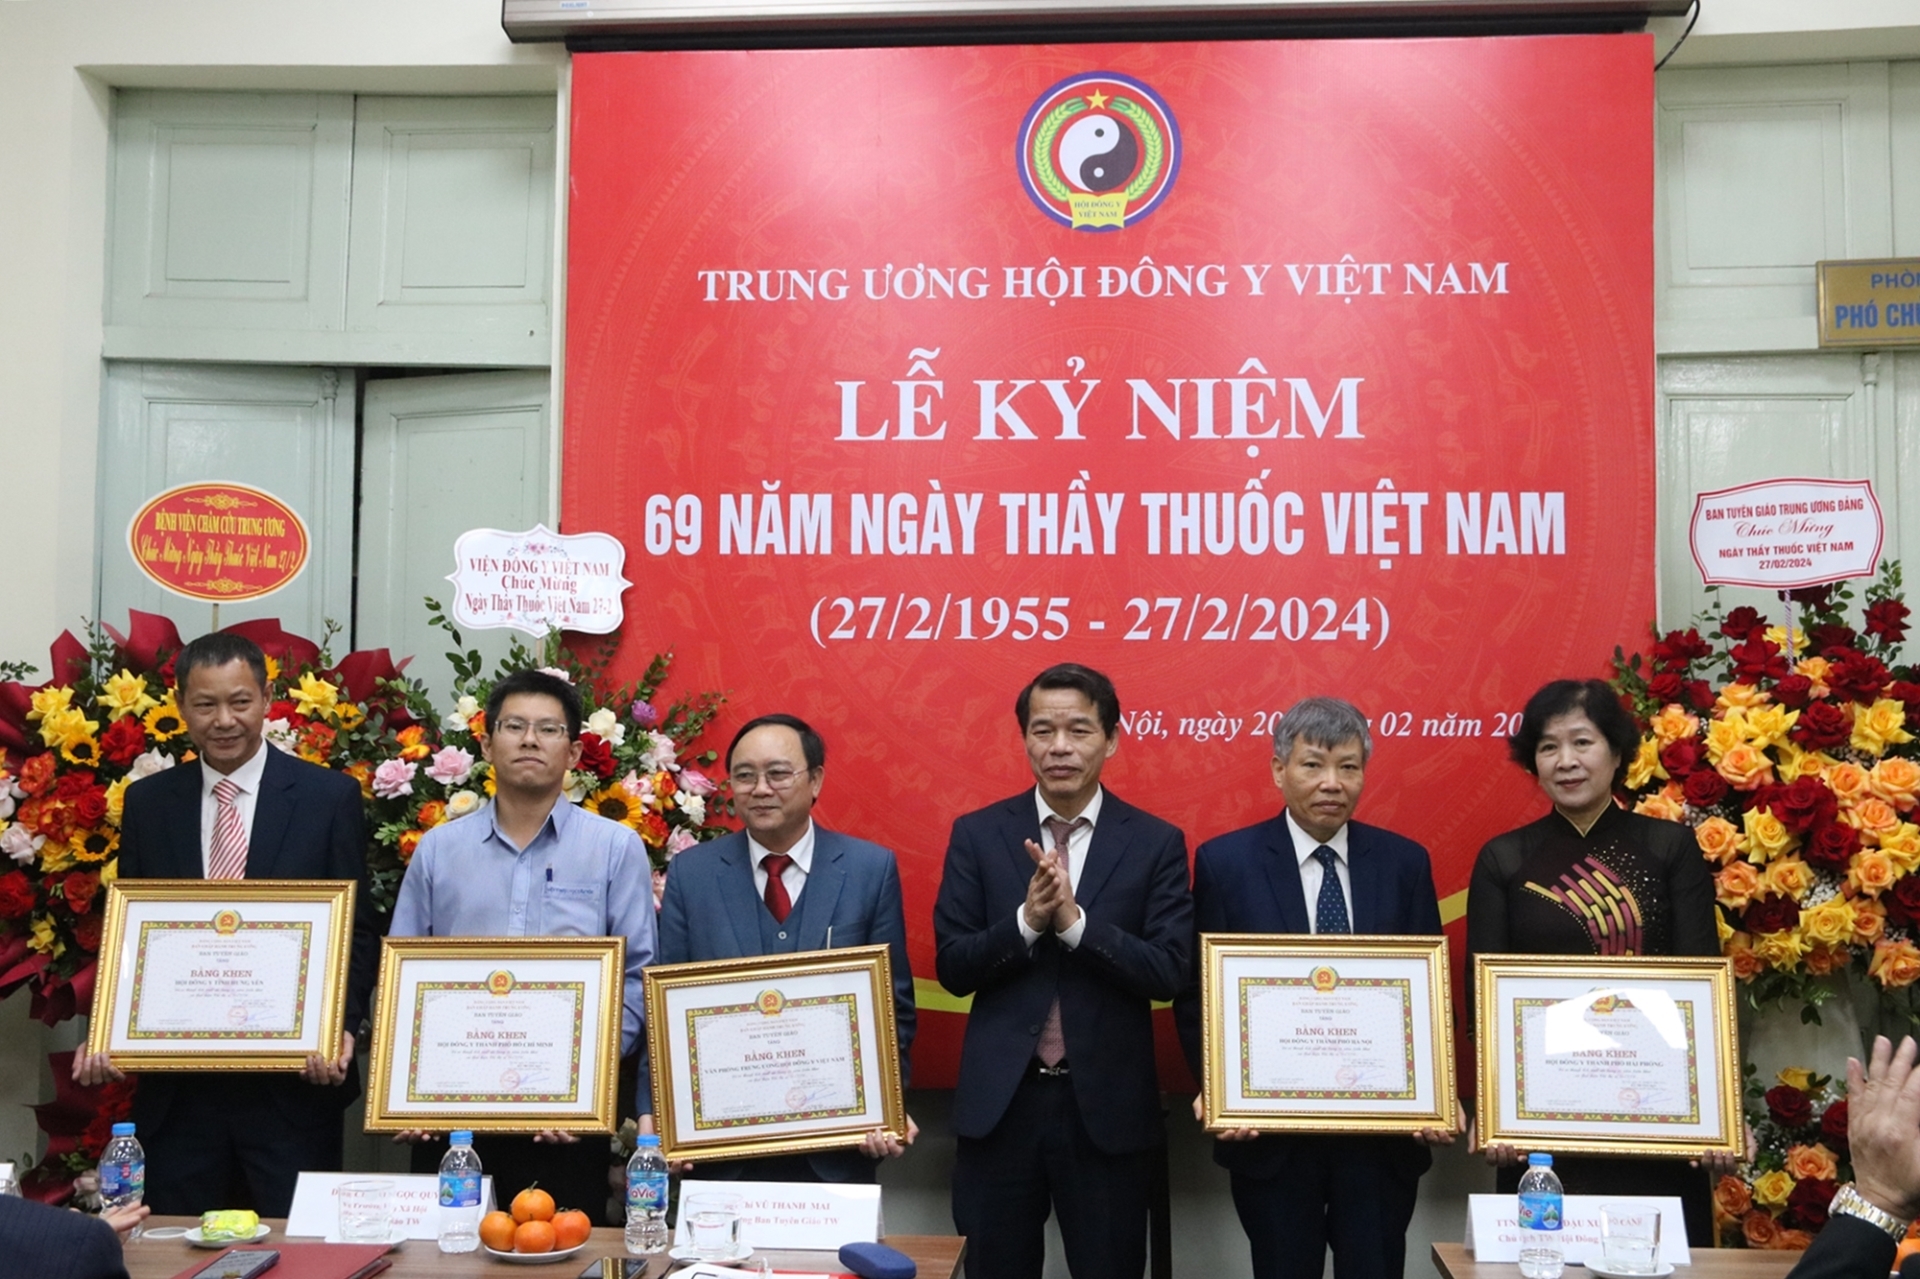 Tặng bằng khen cho các tập thể có thành tích xuất sắc trong 15 năm thực hiện Chỉ thị 24 về phát triển nền đông y Việt Nam và Hội Đông y Việt Nam trong tình hình mới.